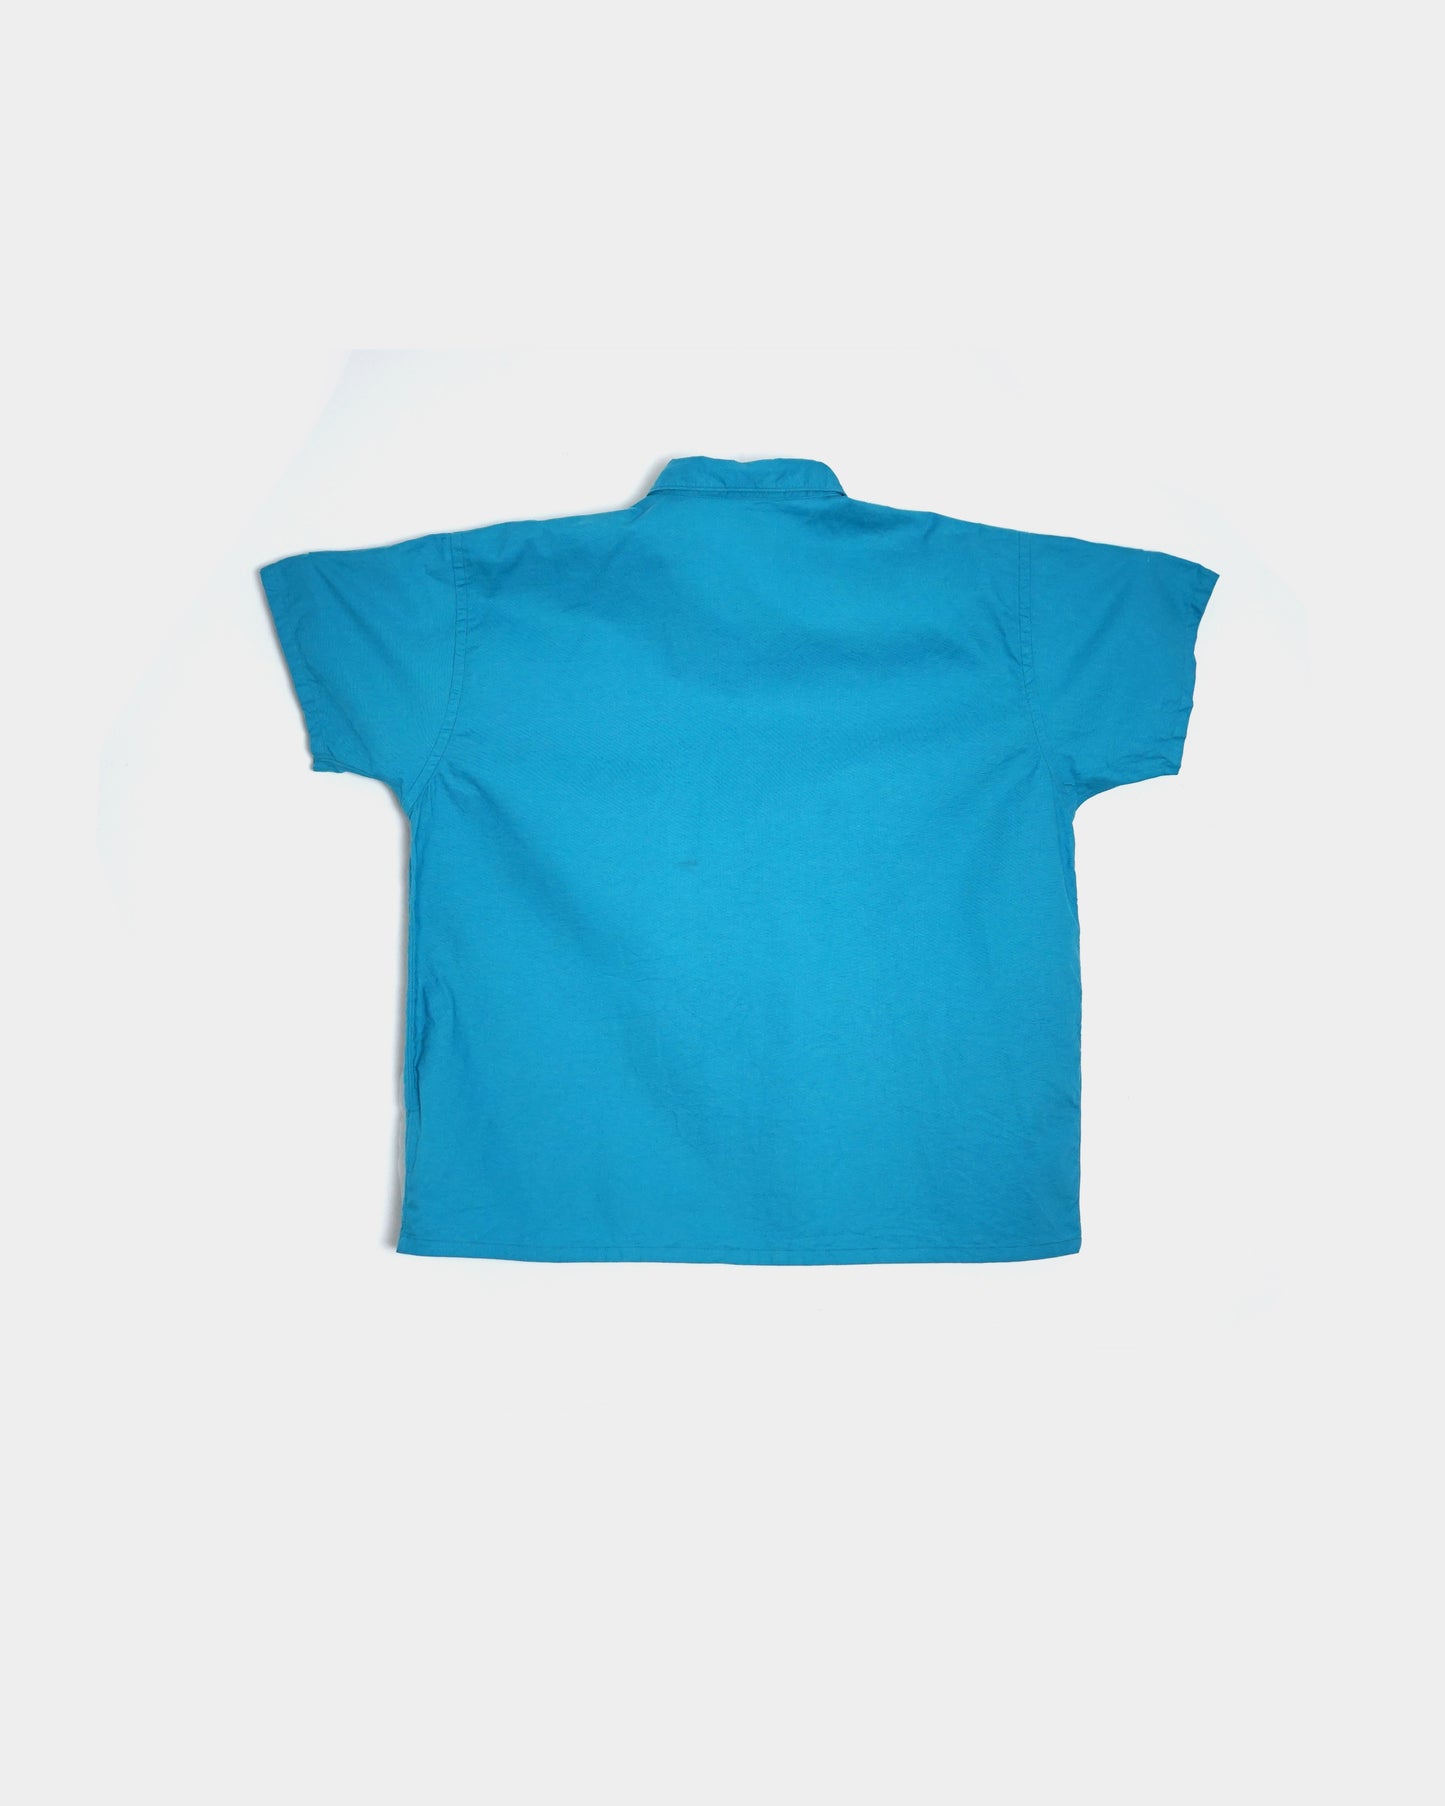 TUKI/blouse "Turquoise"